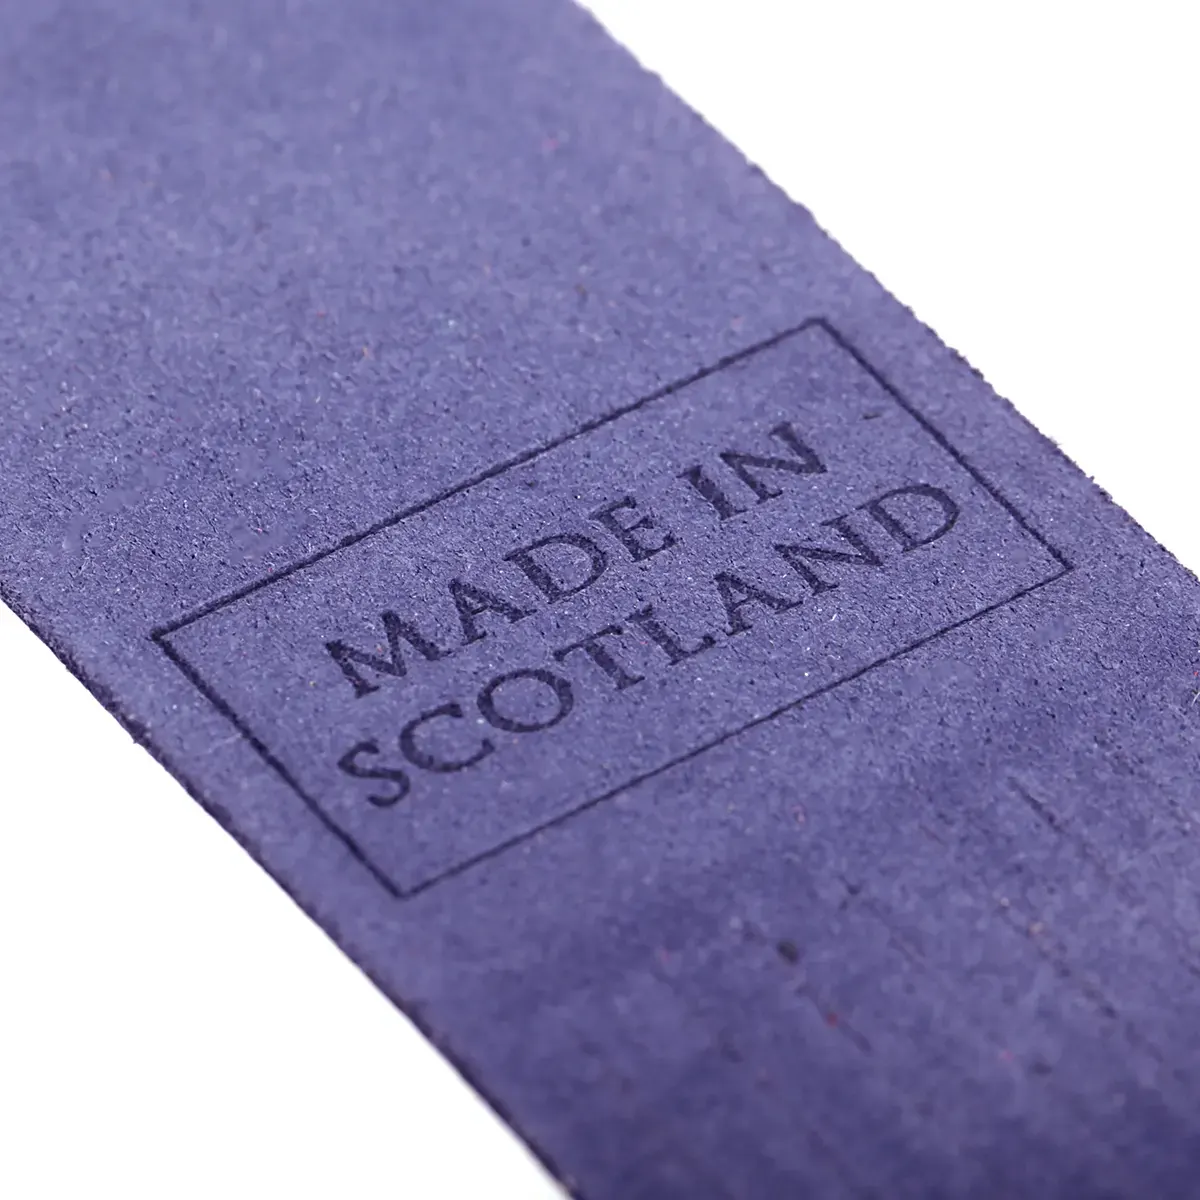 Inverness - Lesezeichen aus Leder in Lila - Made in Scotland